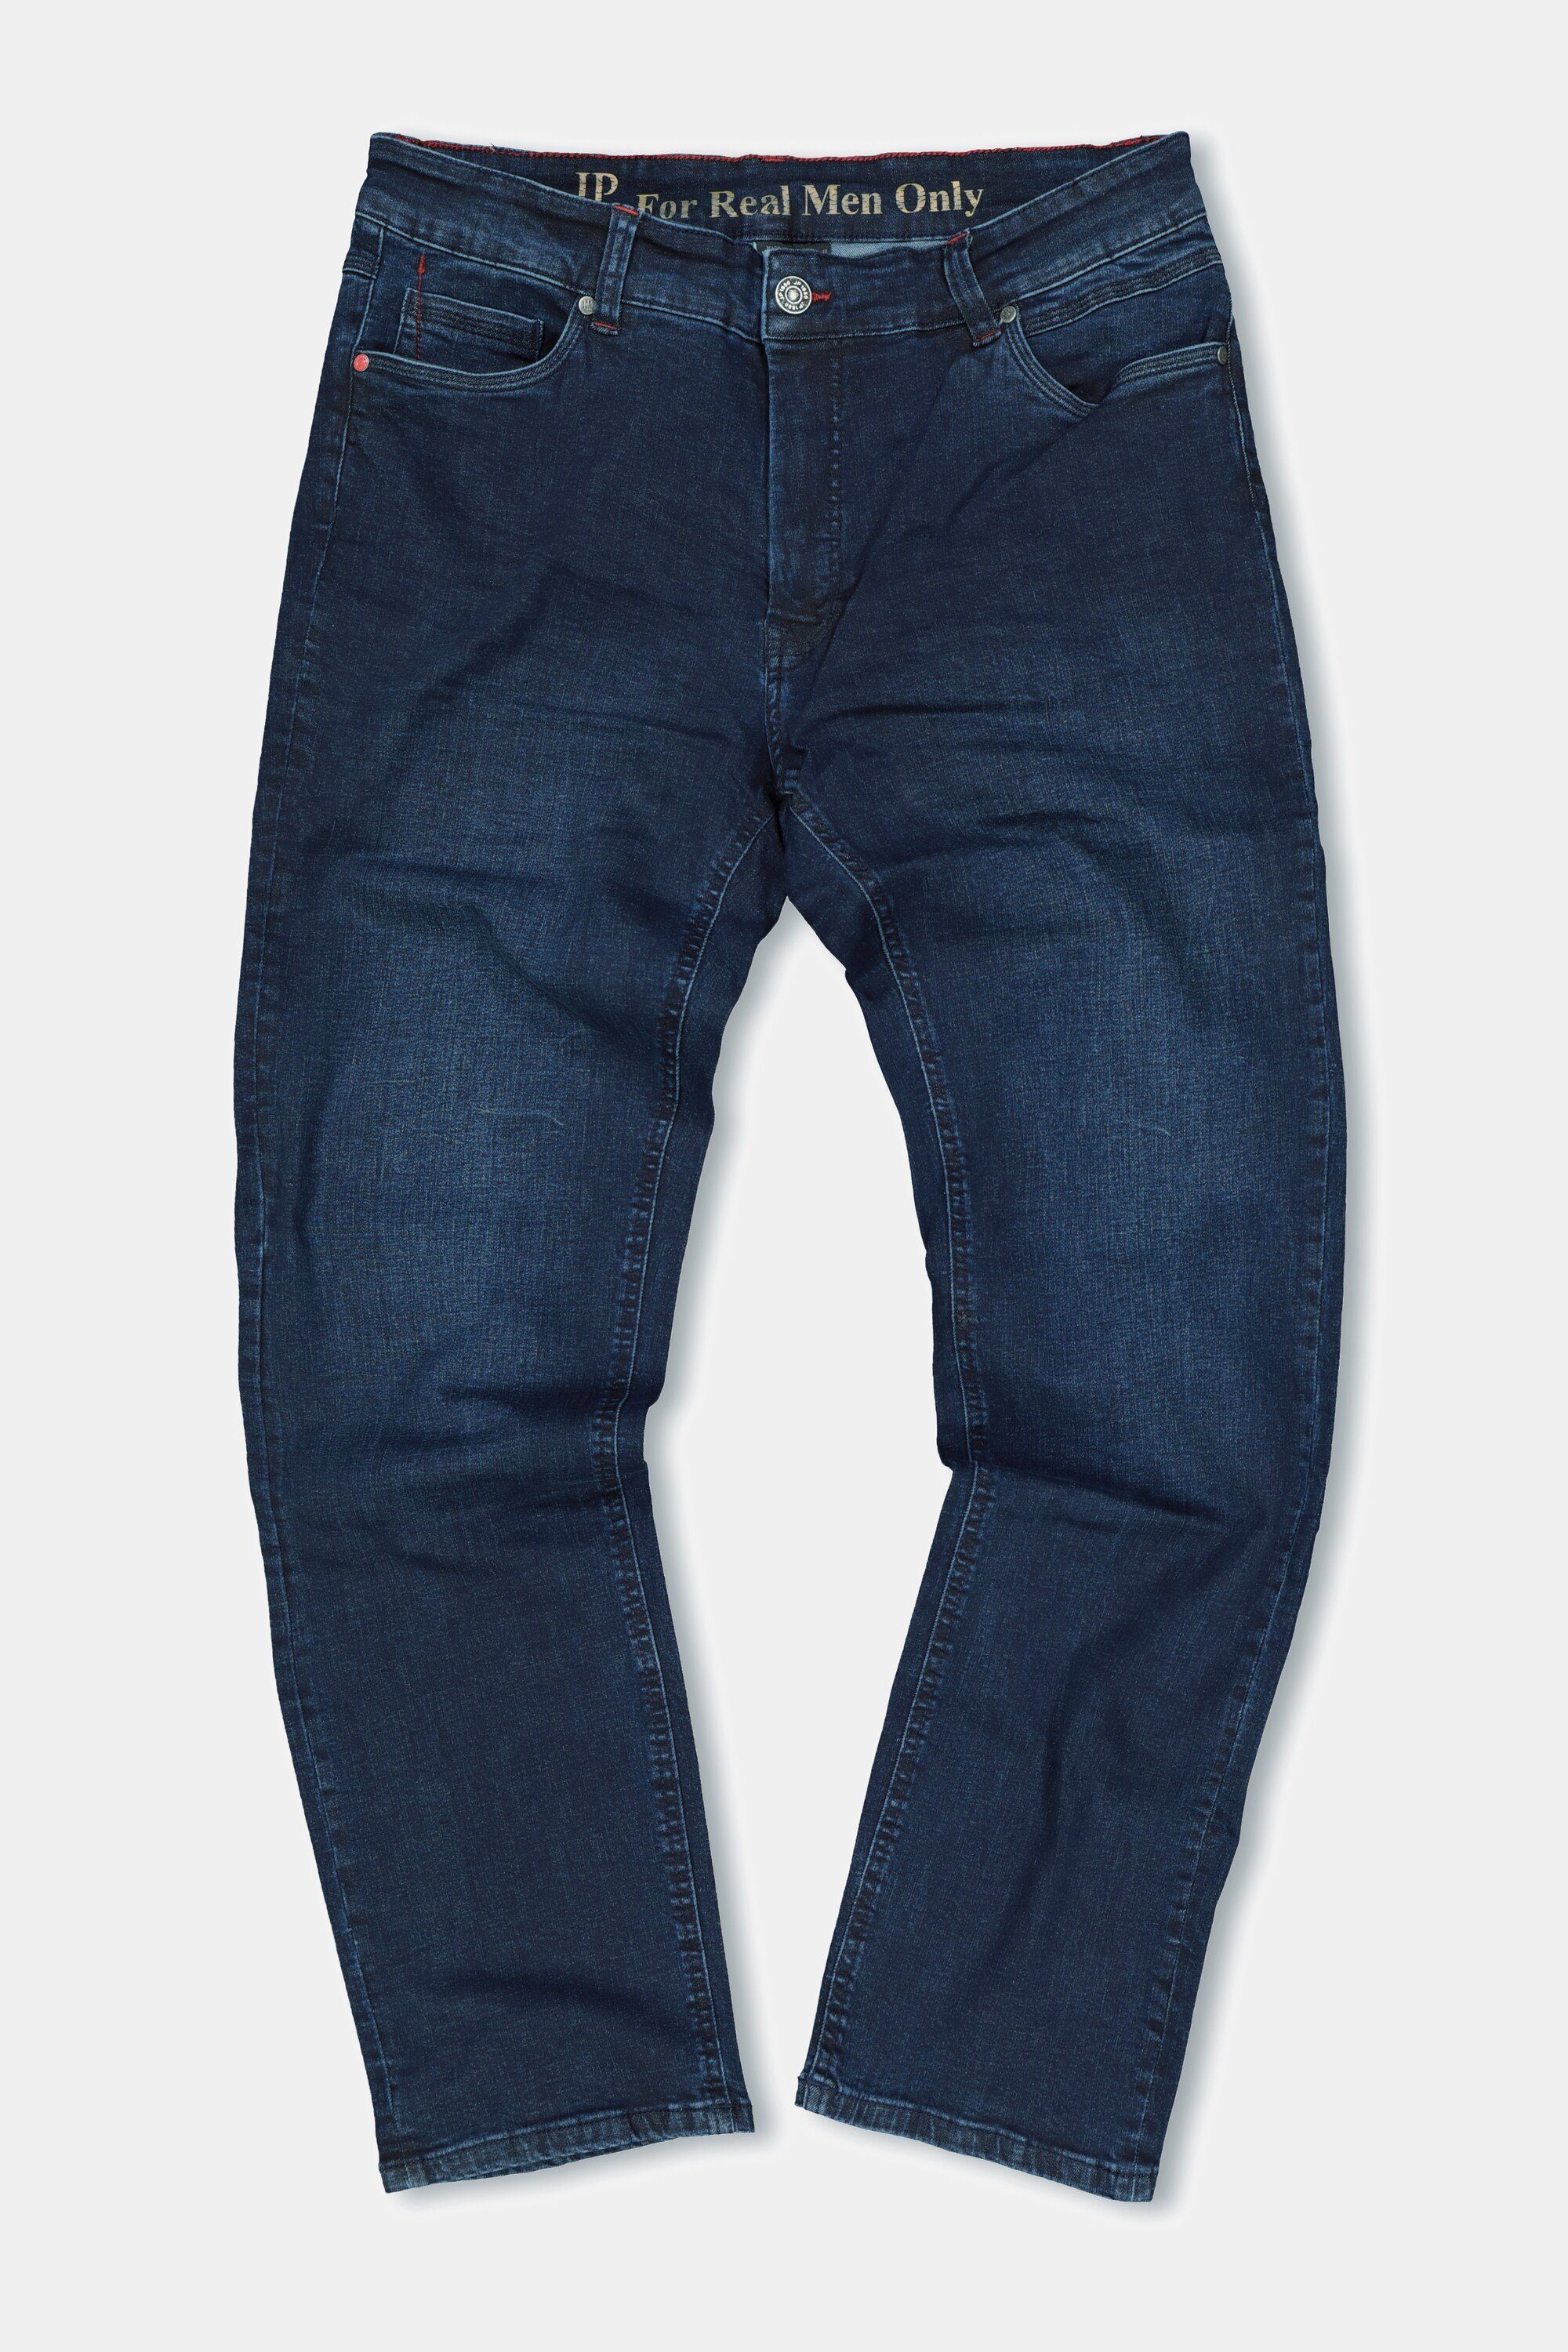 JP1880 5-Pocket-Jeans 70/35 Gr. Jeans Straight denim bis Fit Denim blue dark FLEXNAMIC®